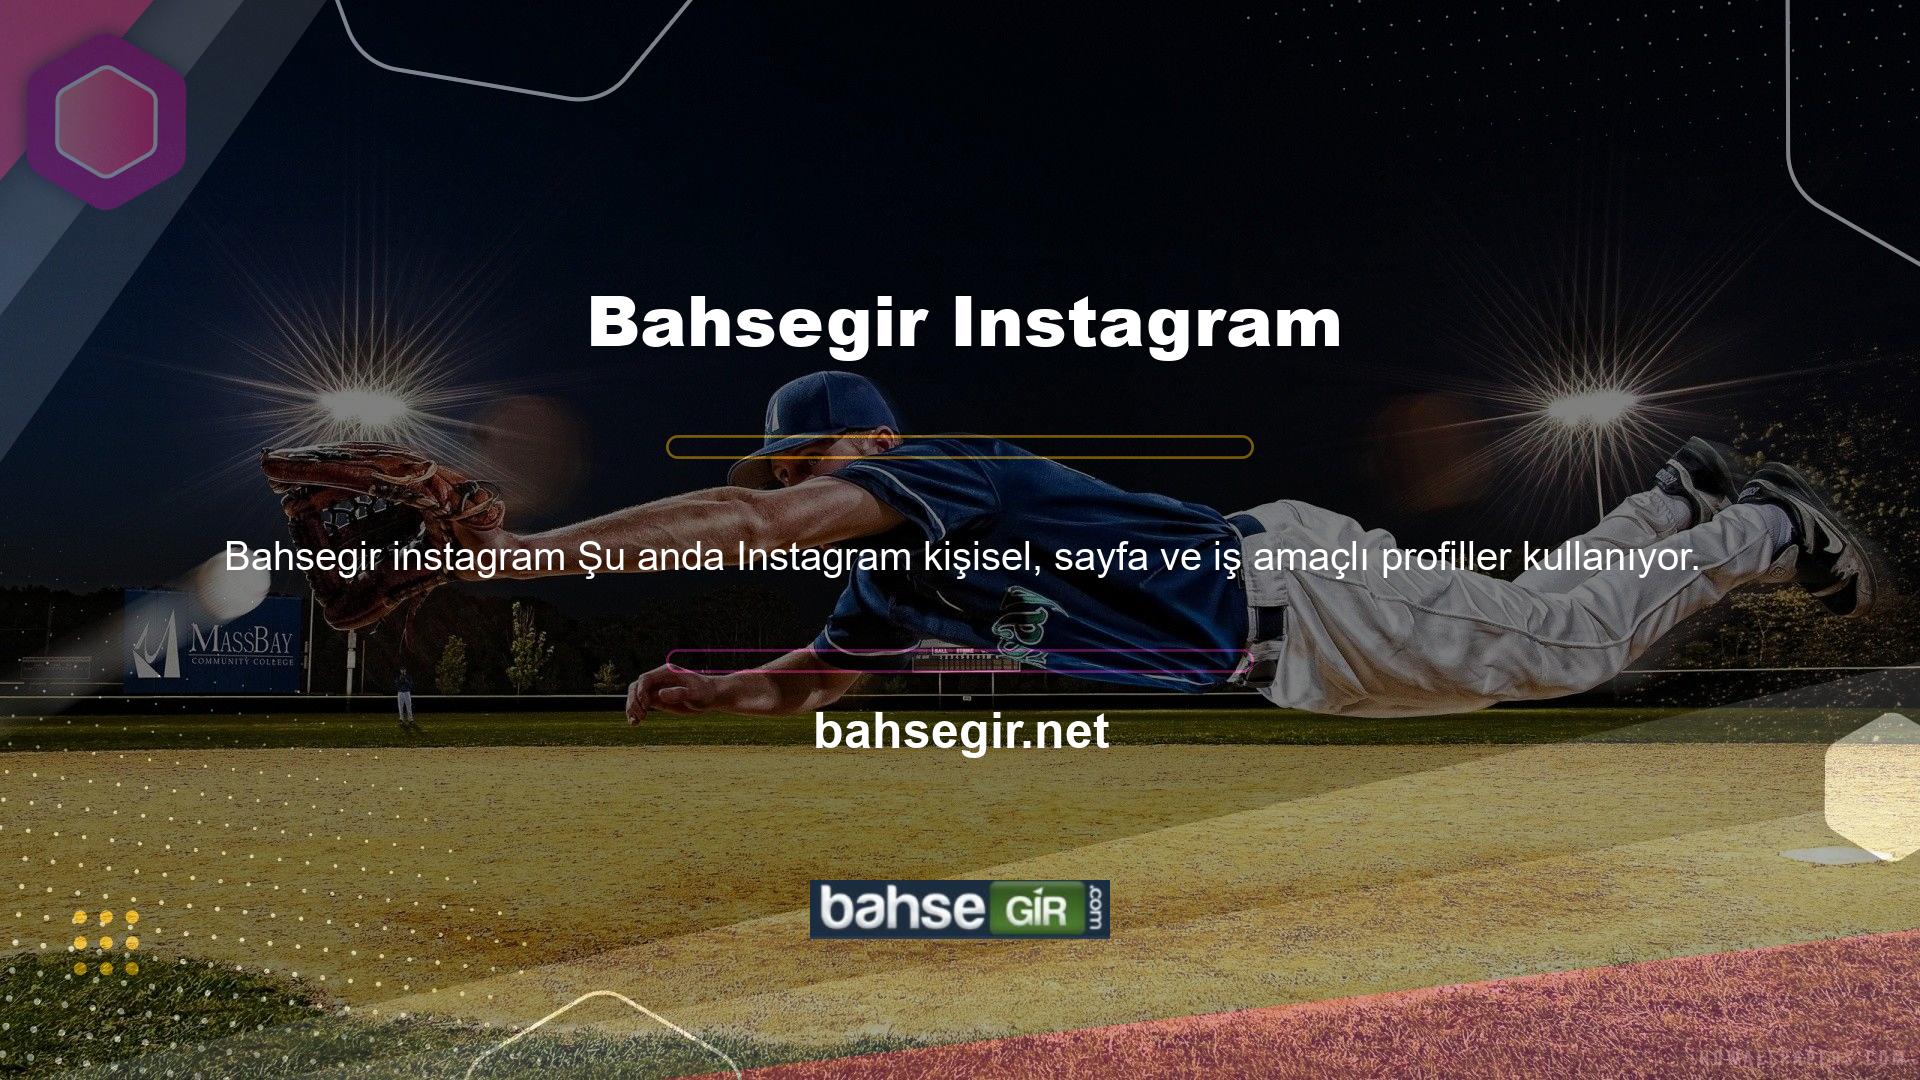 Bahsegir web sitesi de milyarlarca kullanıcısı olan bu sosyal medya platformunun bir parçasıdır